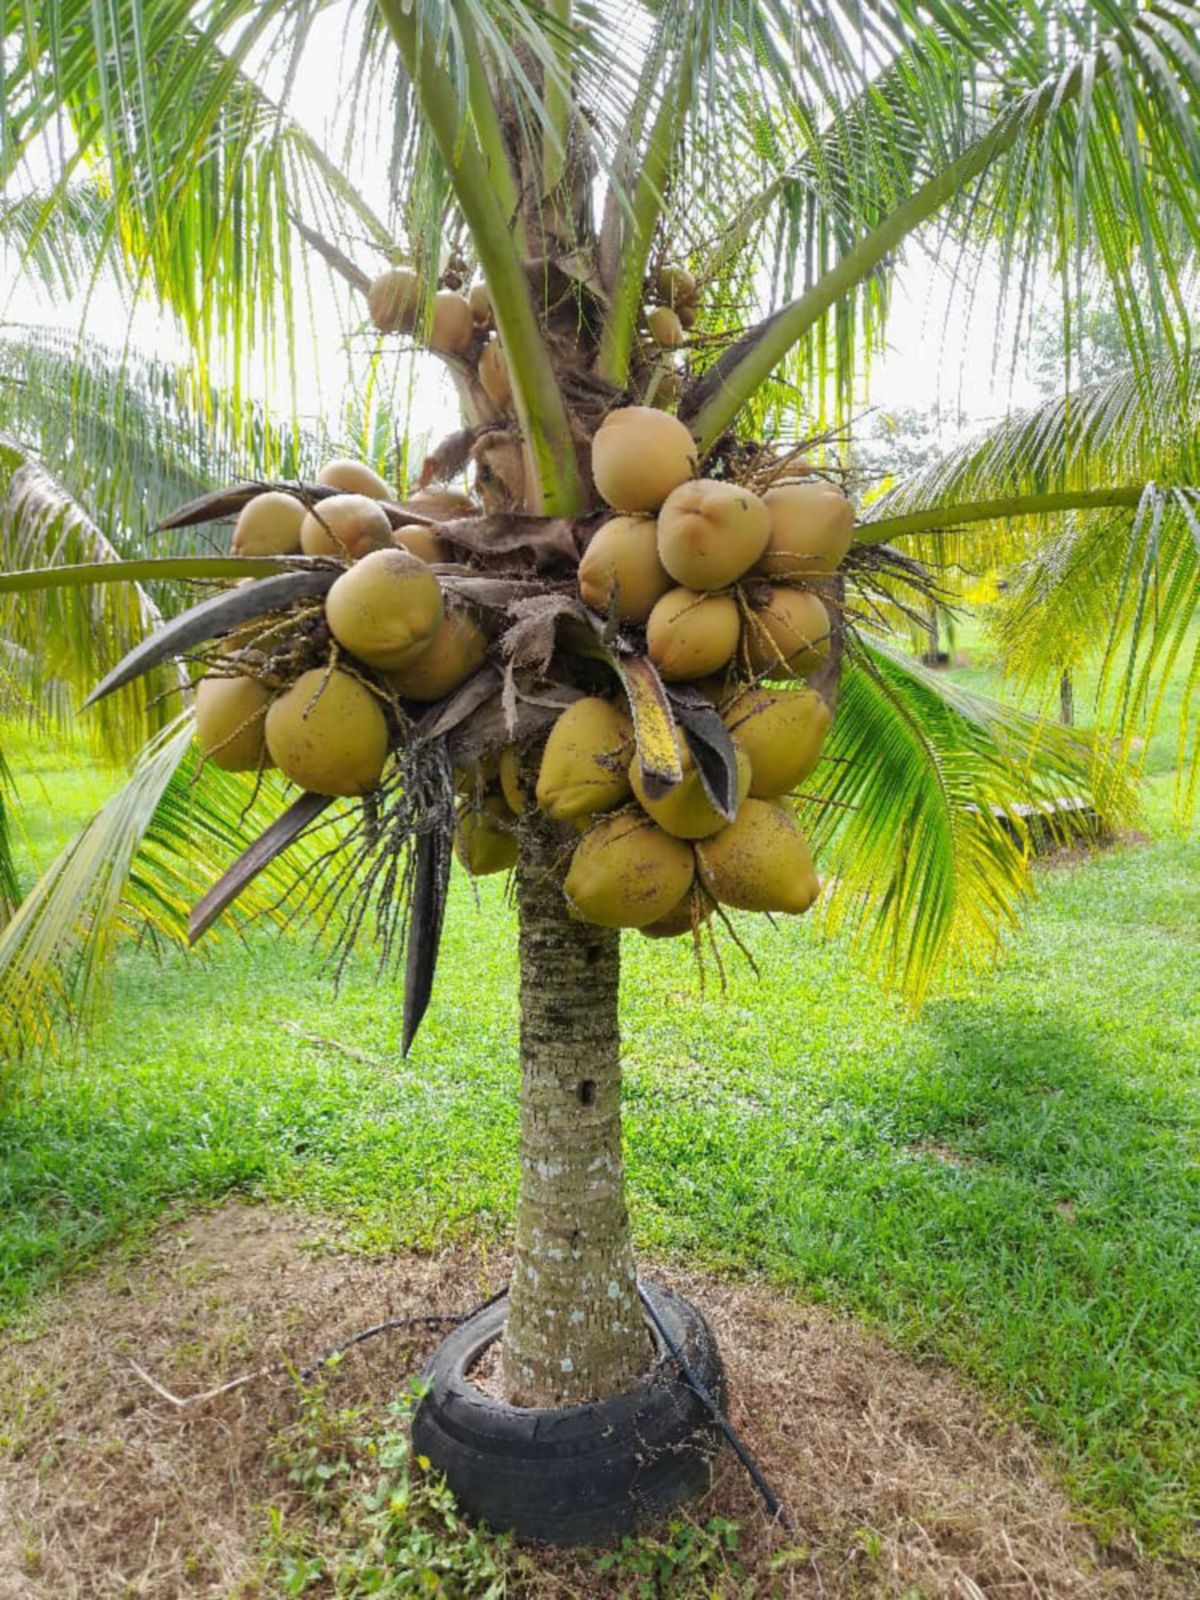 SAIZ pokok juga tidak terlalu tinggi memudahkan pengusaha kelapa memetik buah.